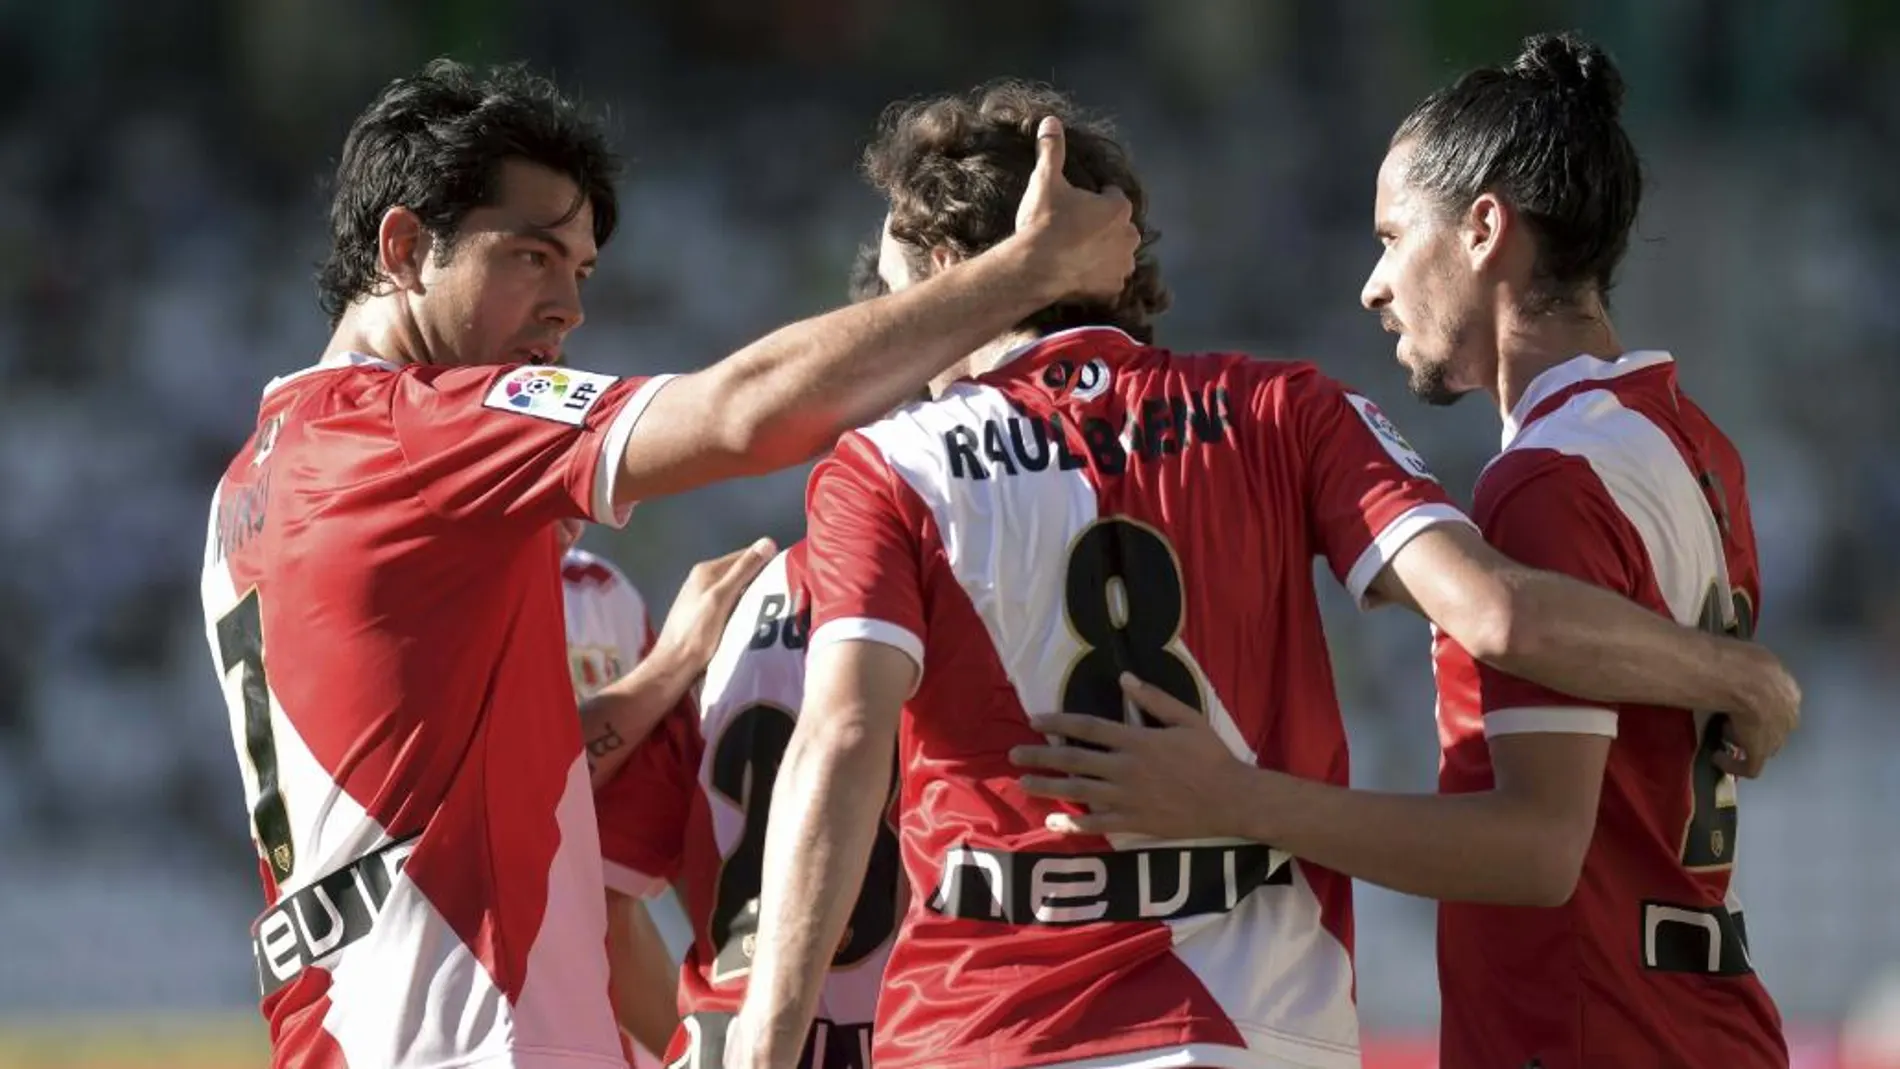 El centrocampista del Rayo Vallecano Raúl Baena (c) celebra con sus compañeros su gol ante el Córdoba.